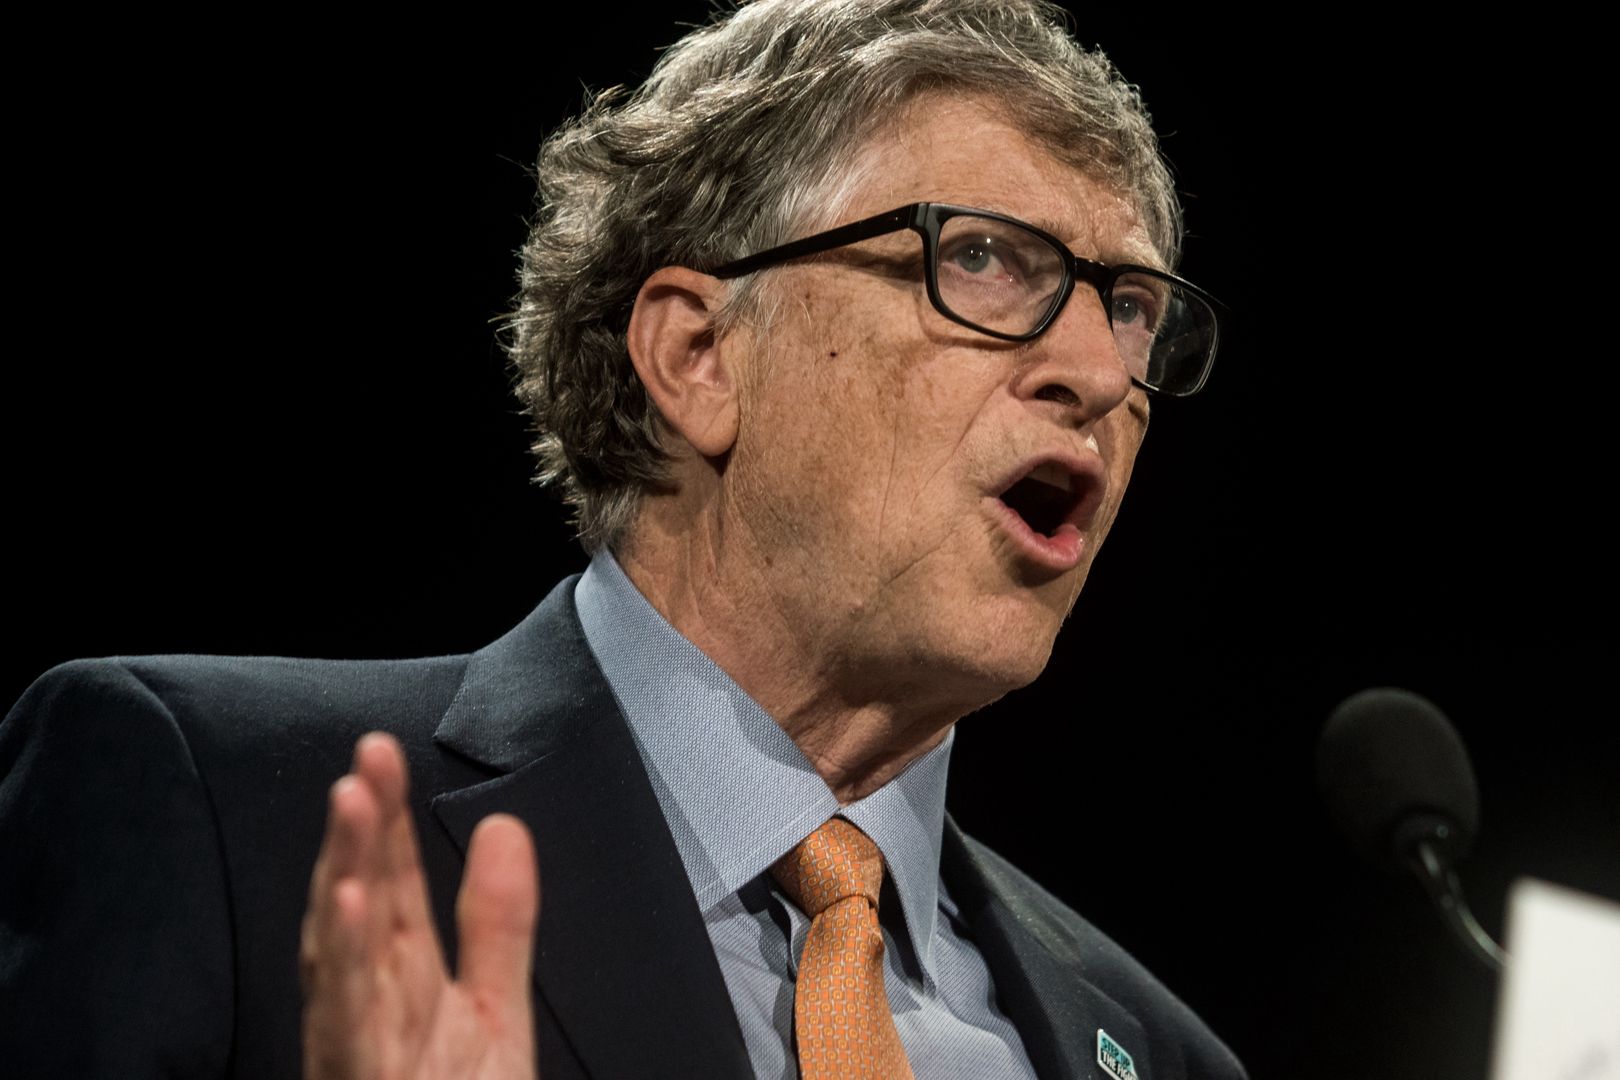 "Już nikogo nie trzeba przekonywać". Bill Gates ostrzega świat